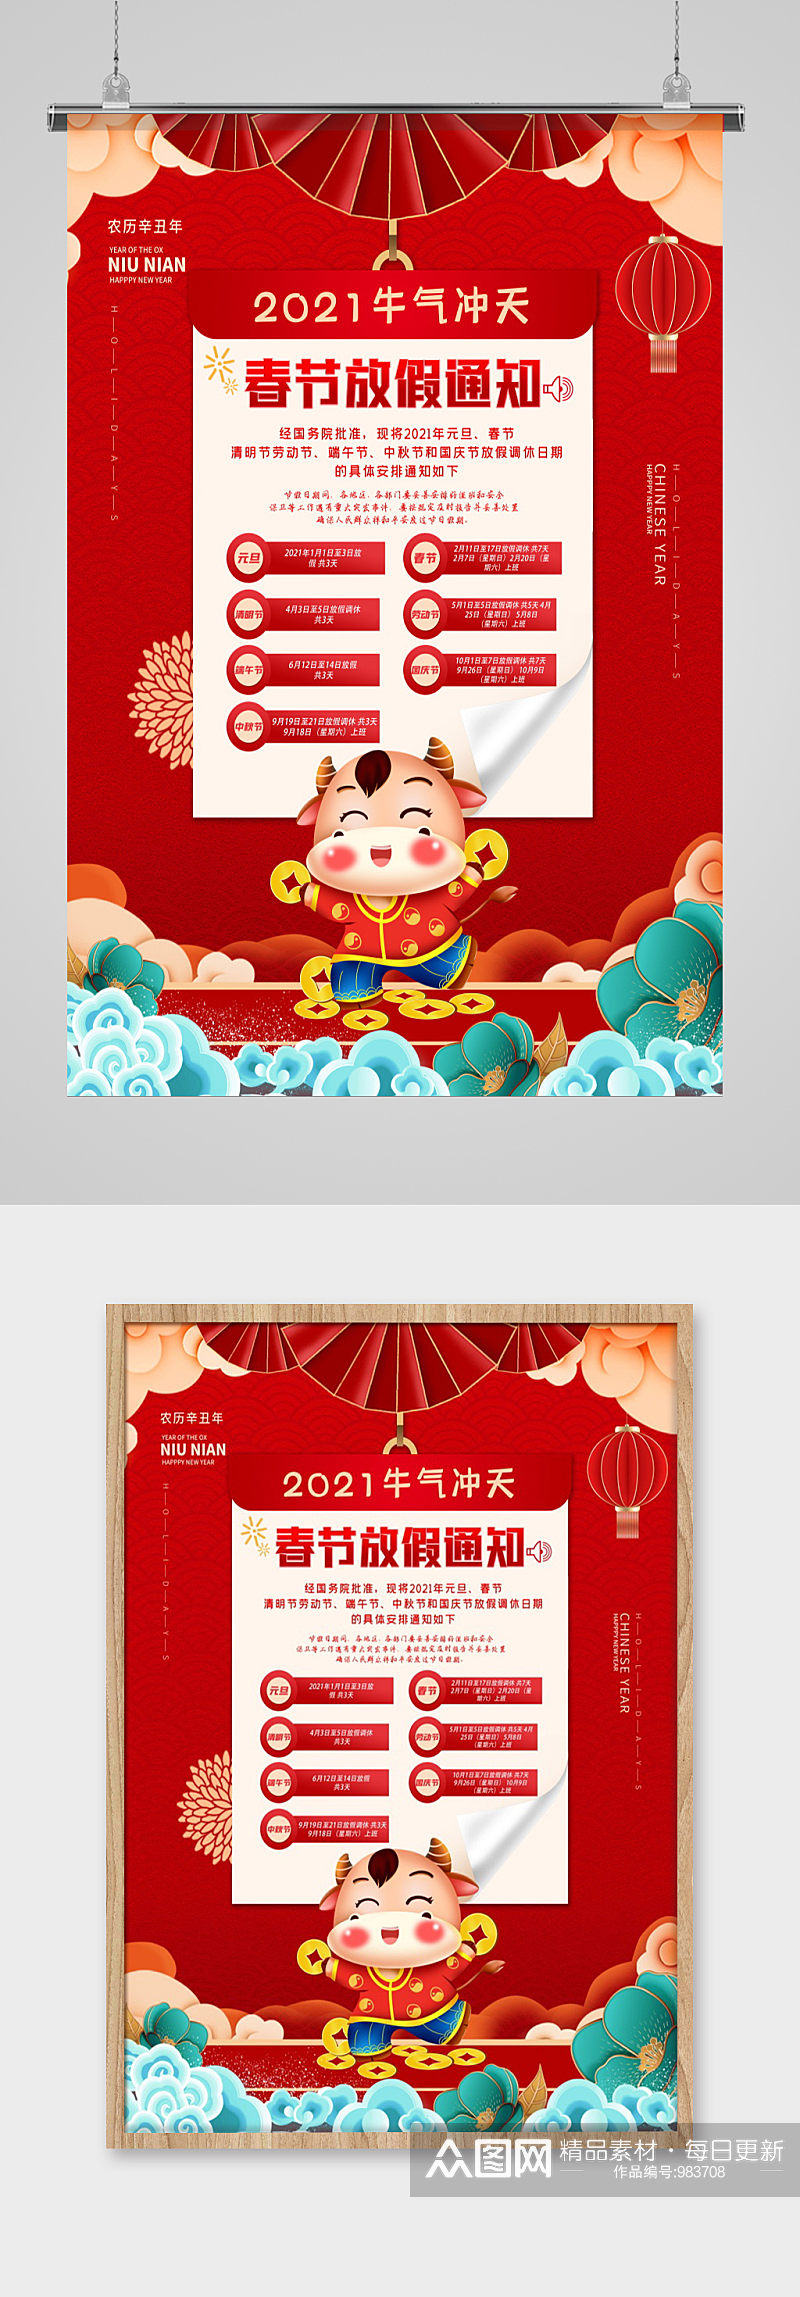 2021年牛气冲天春节放假通知海报素材